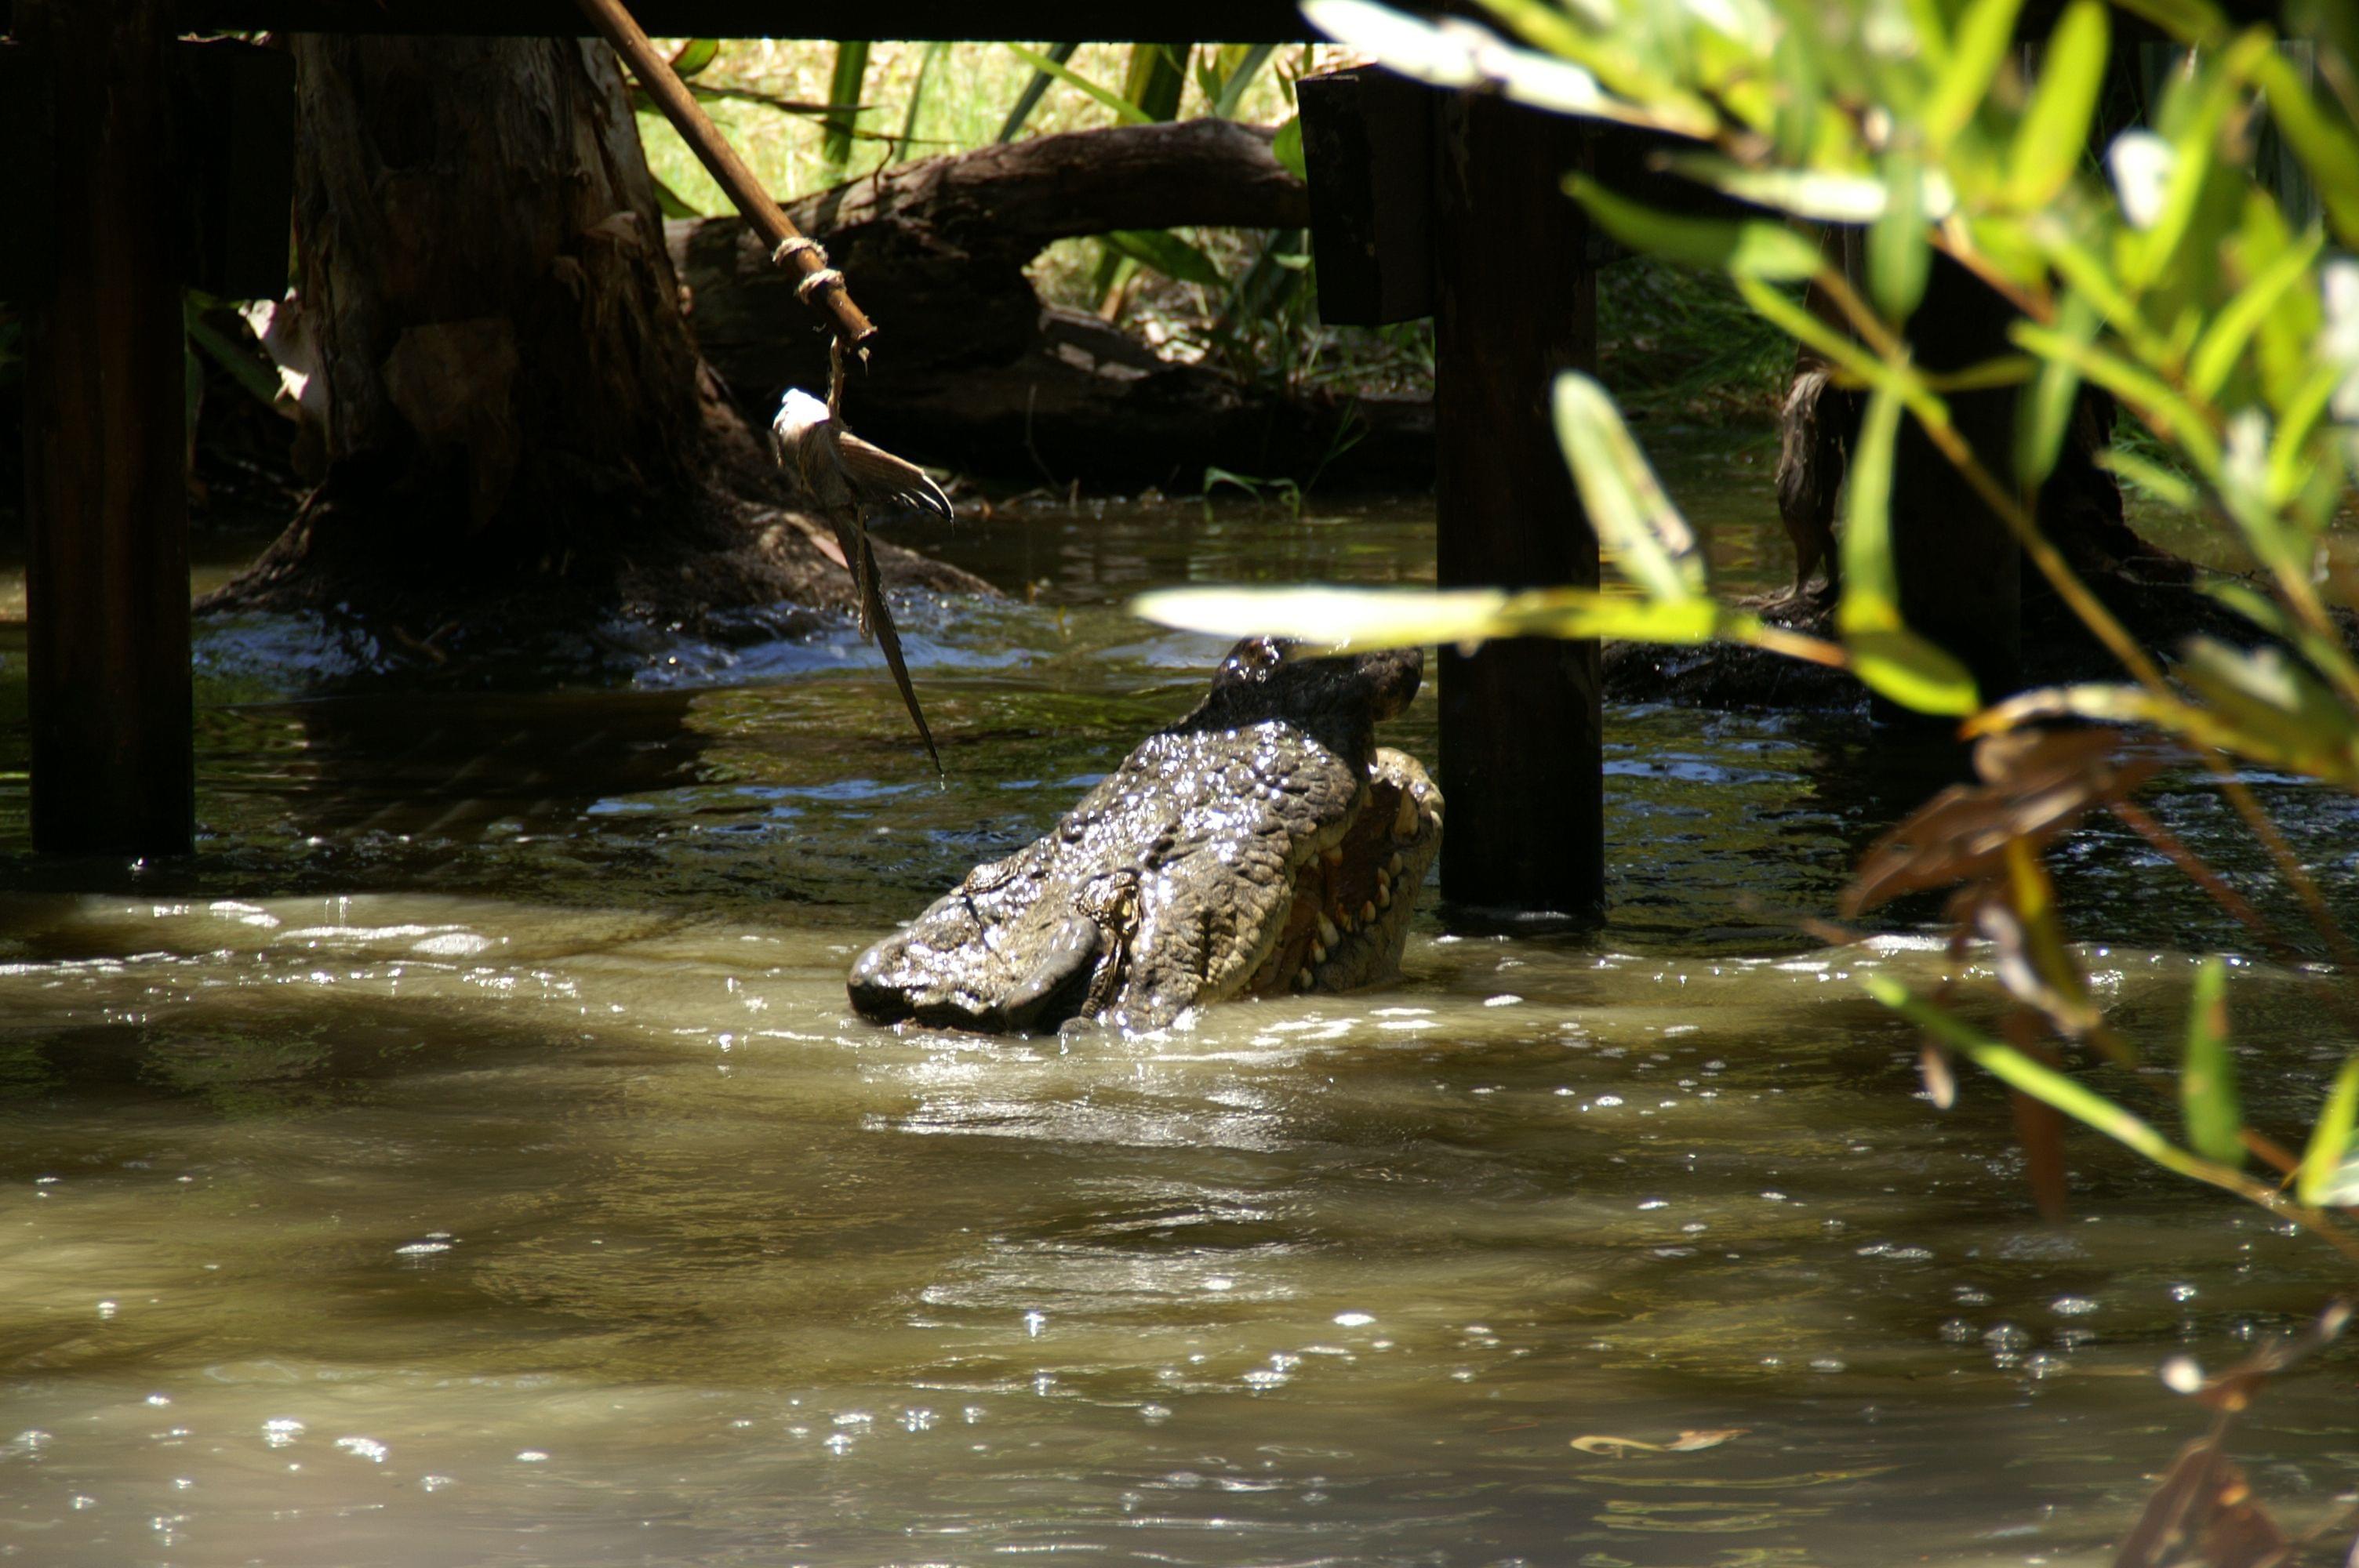 Hartley's Crocodile Adventure